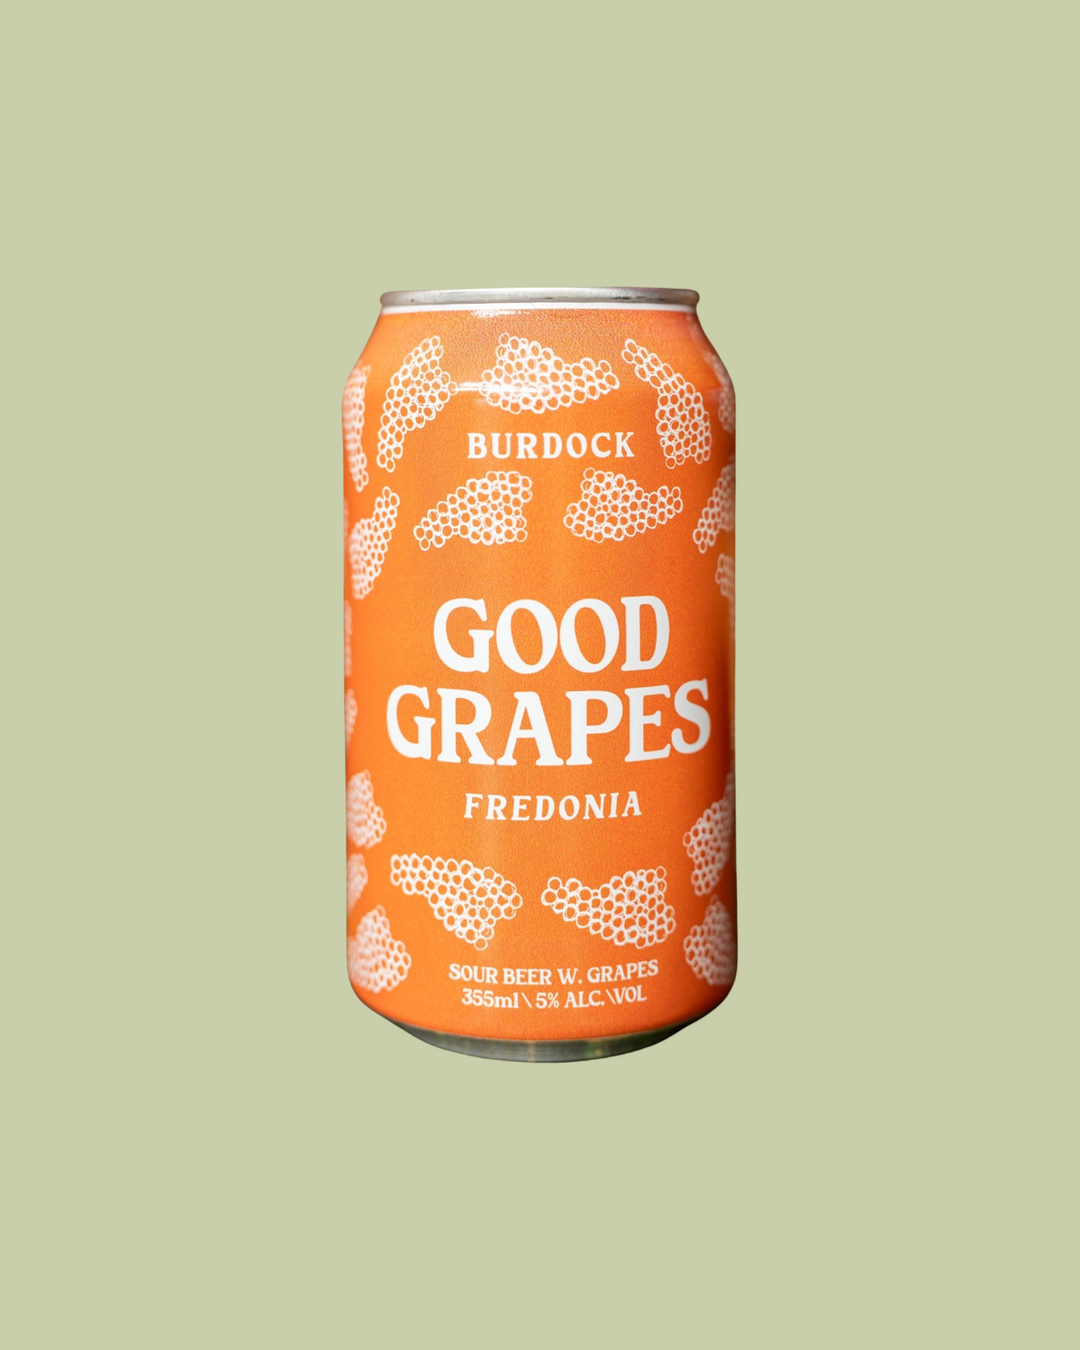 Good Grapes: Fredonia